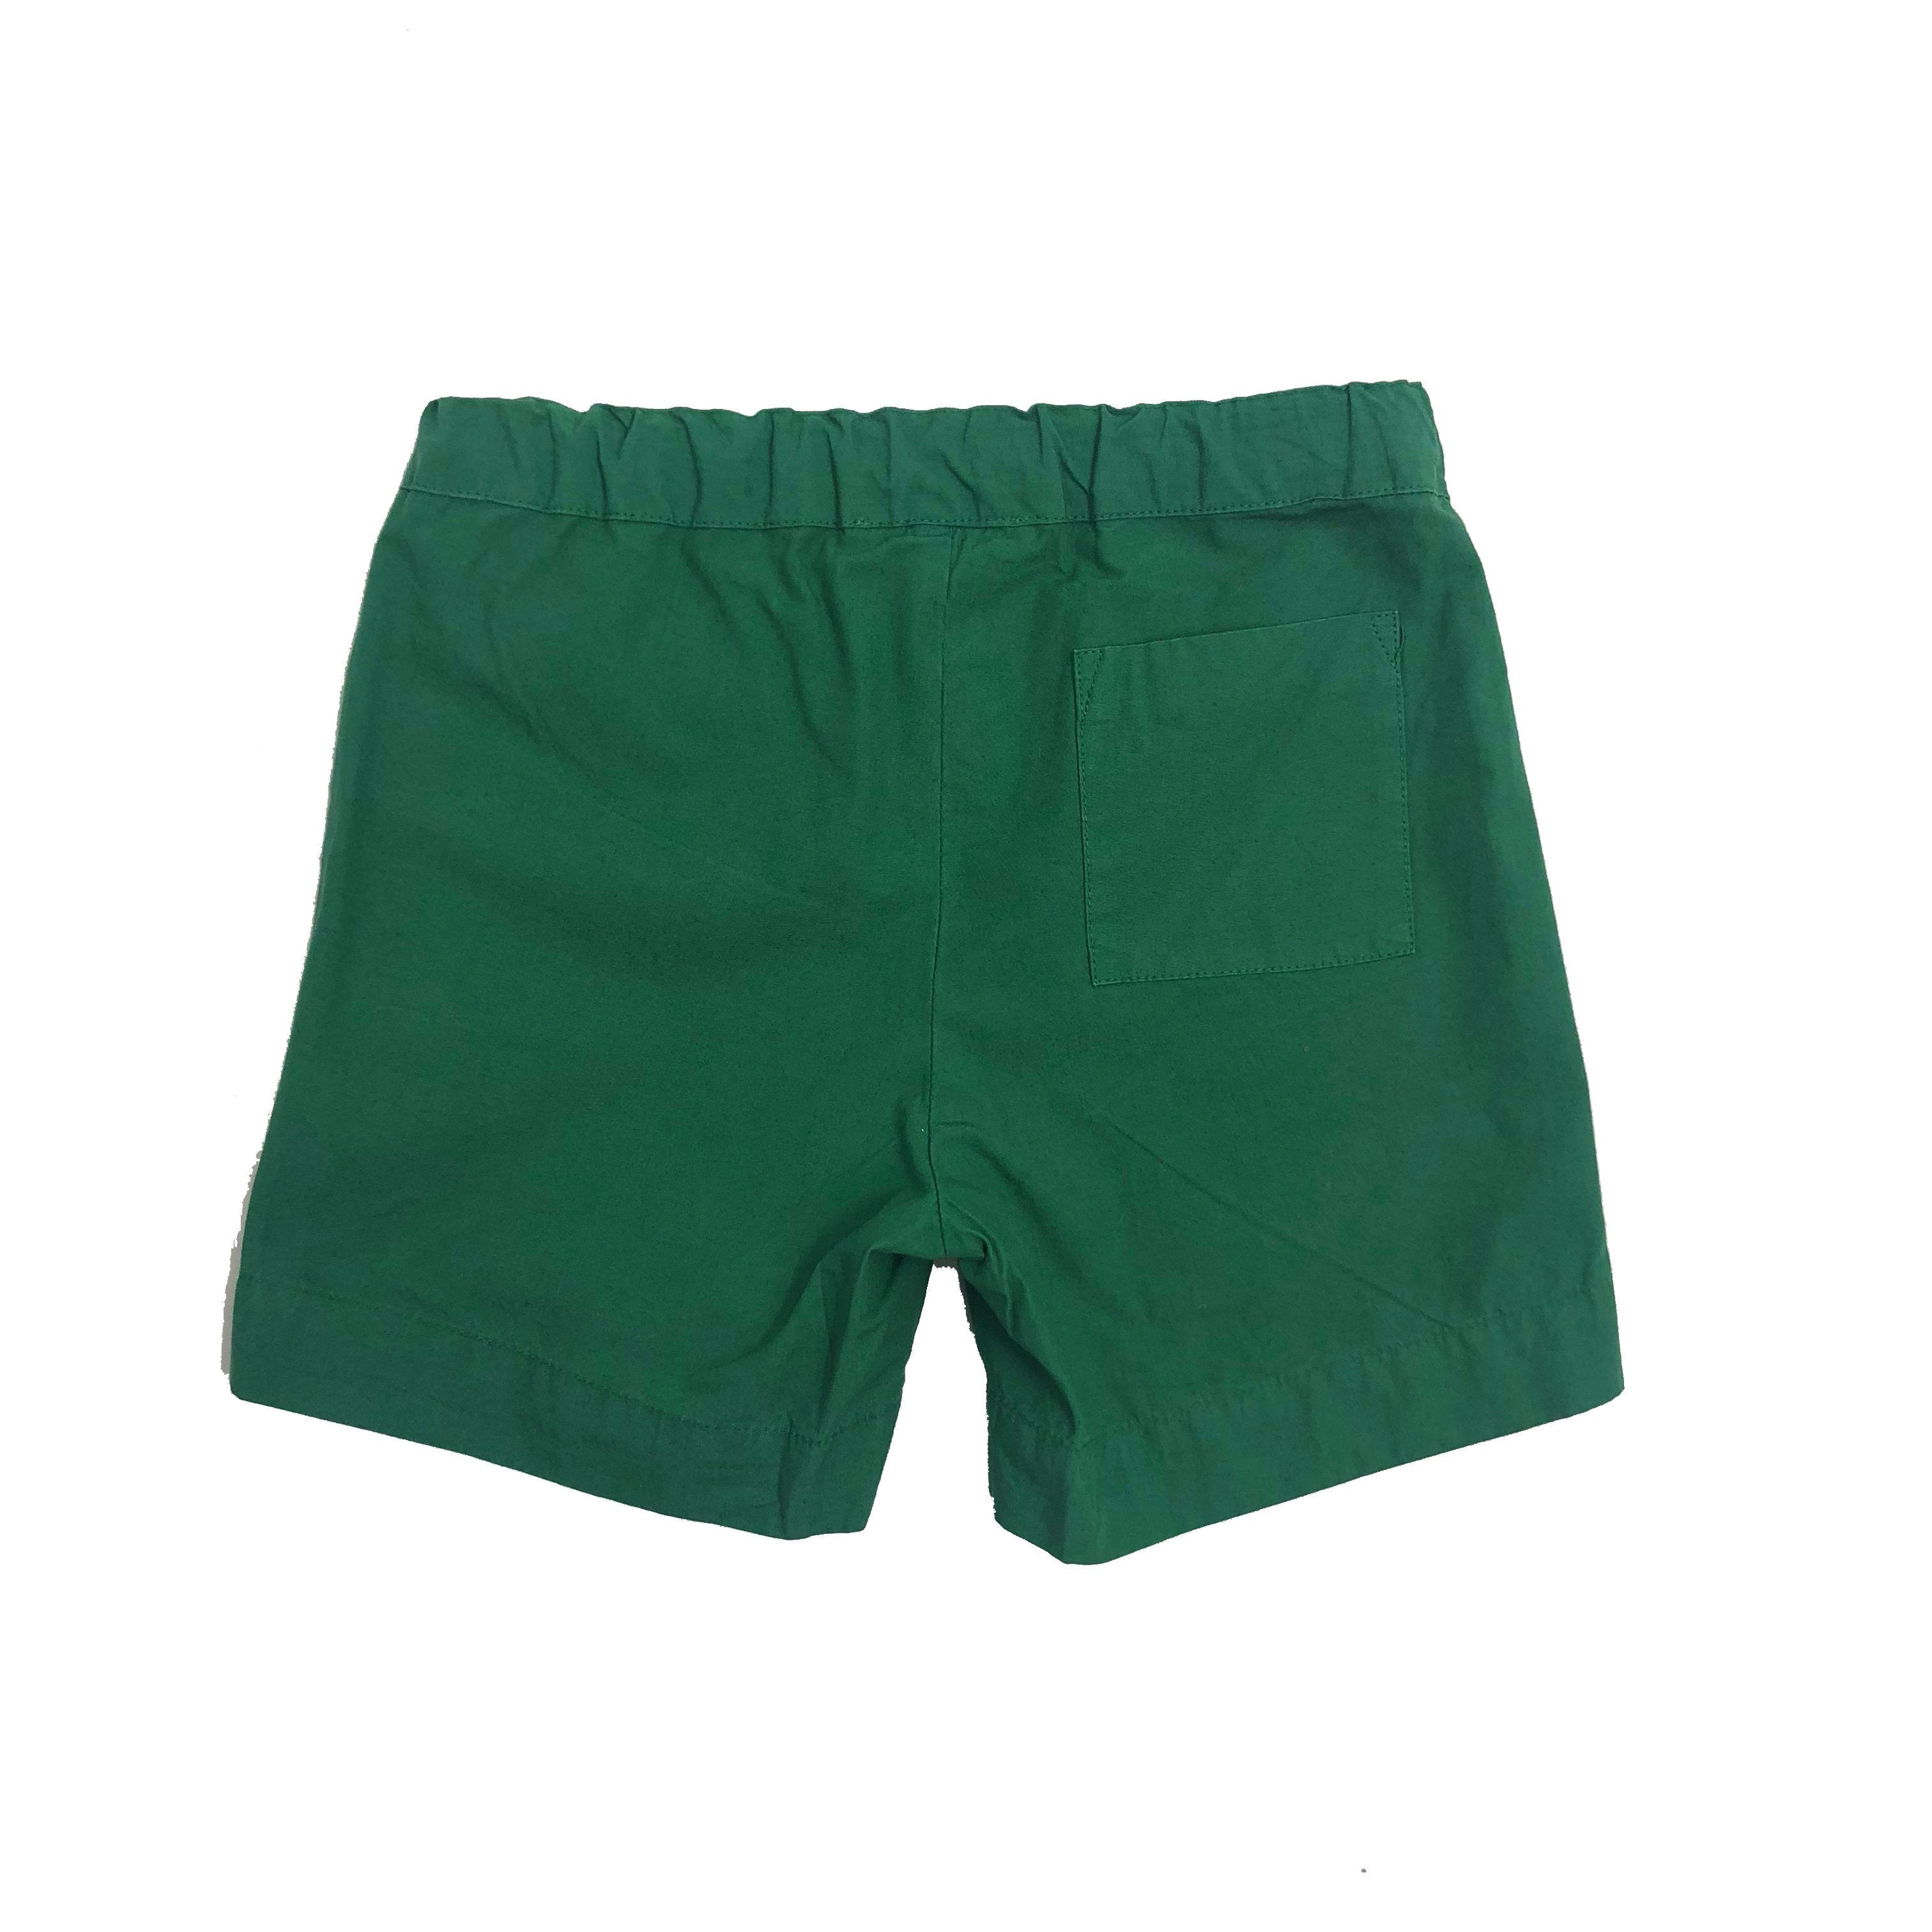 Boys Min Green Cotton Woven Shorts